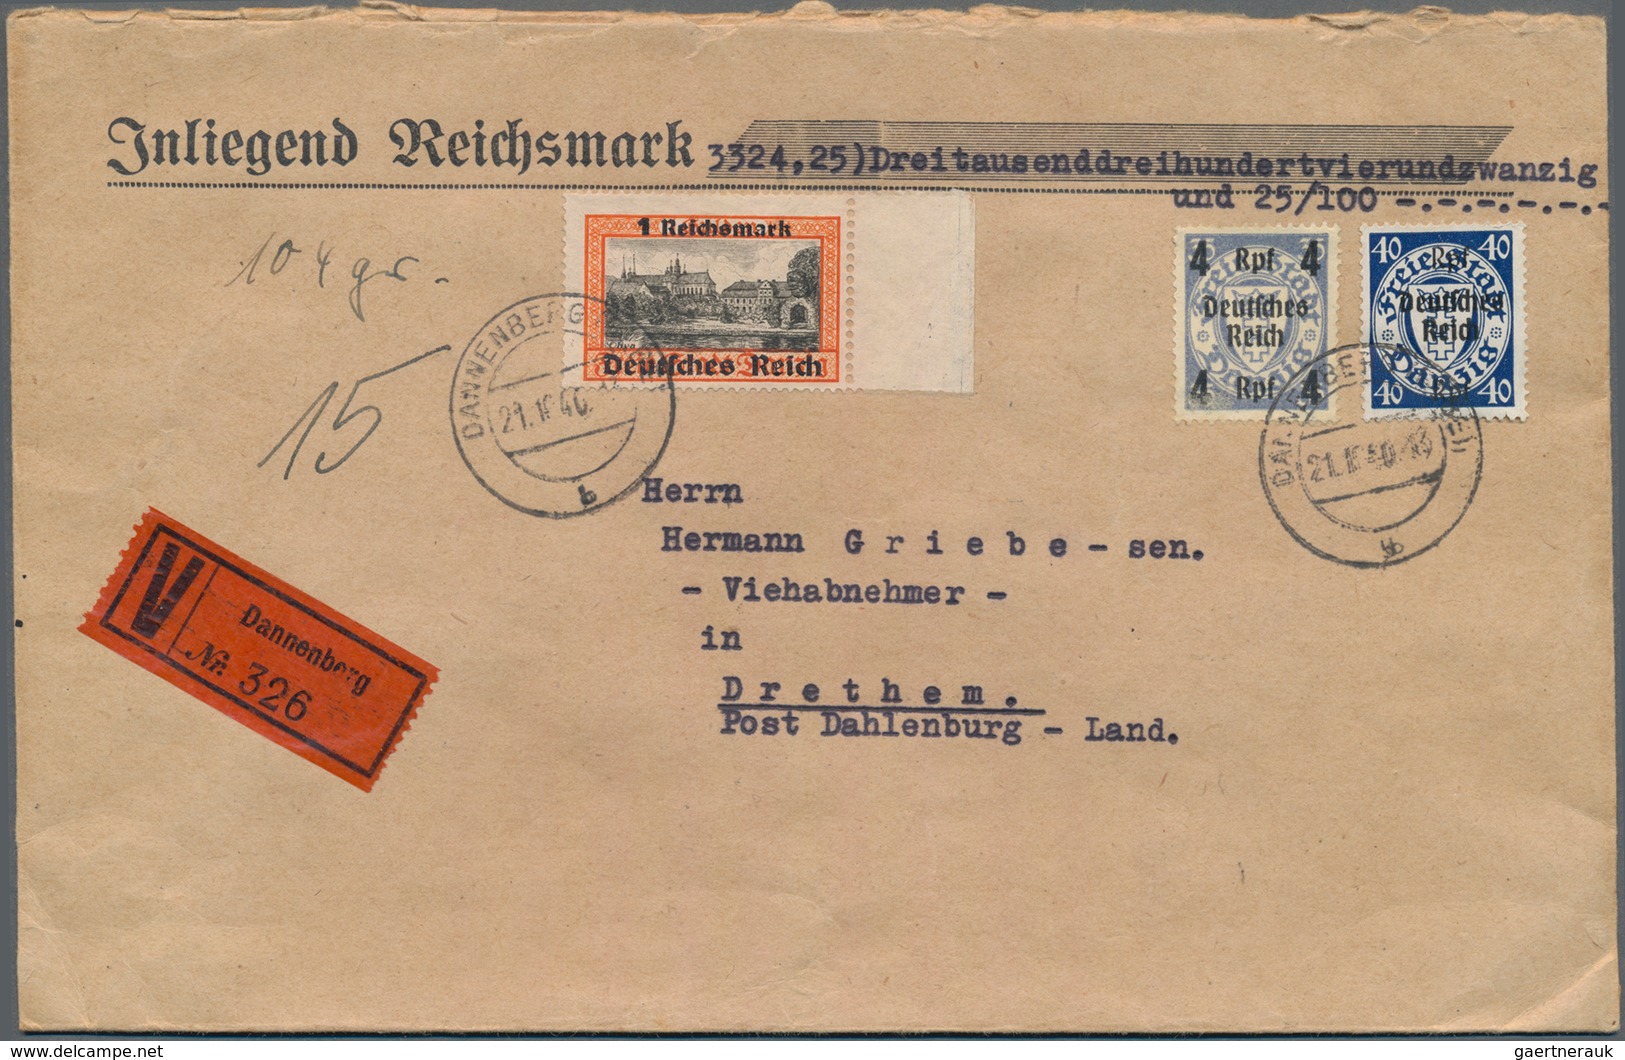 Deutsches Reich - 3. Reich: 1933/1945, gehaltvoller Sammlungsbestand mit ca.140 Belegen, dabei Einsc